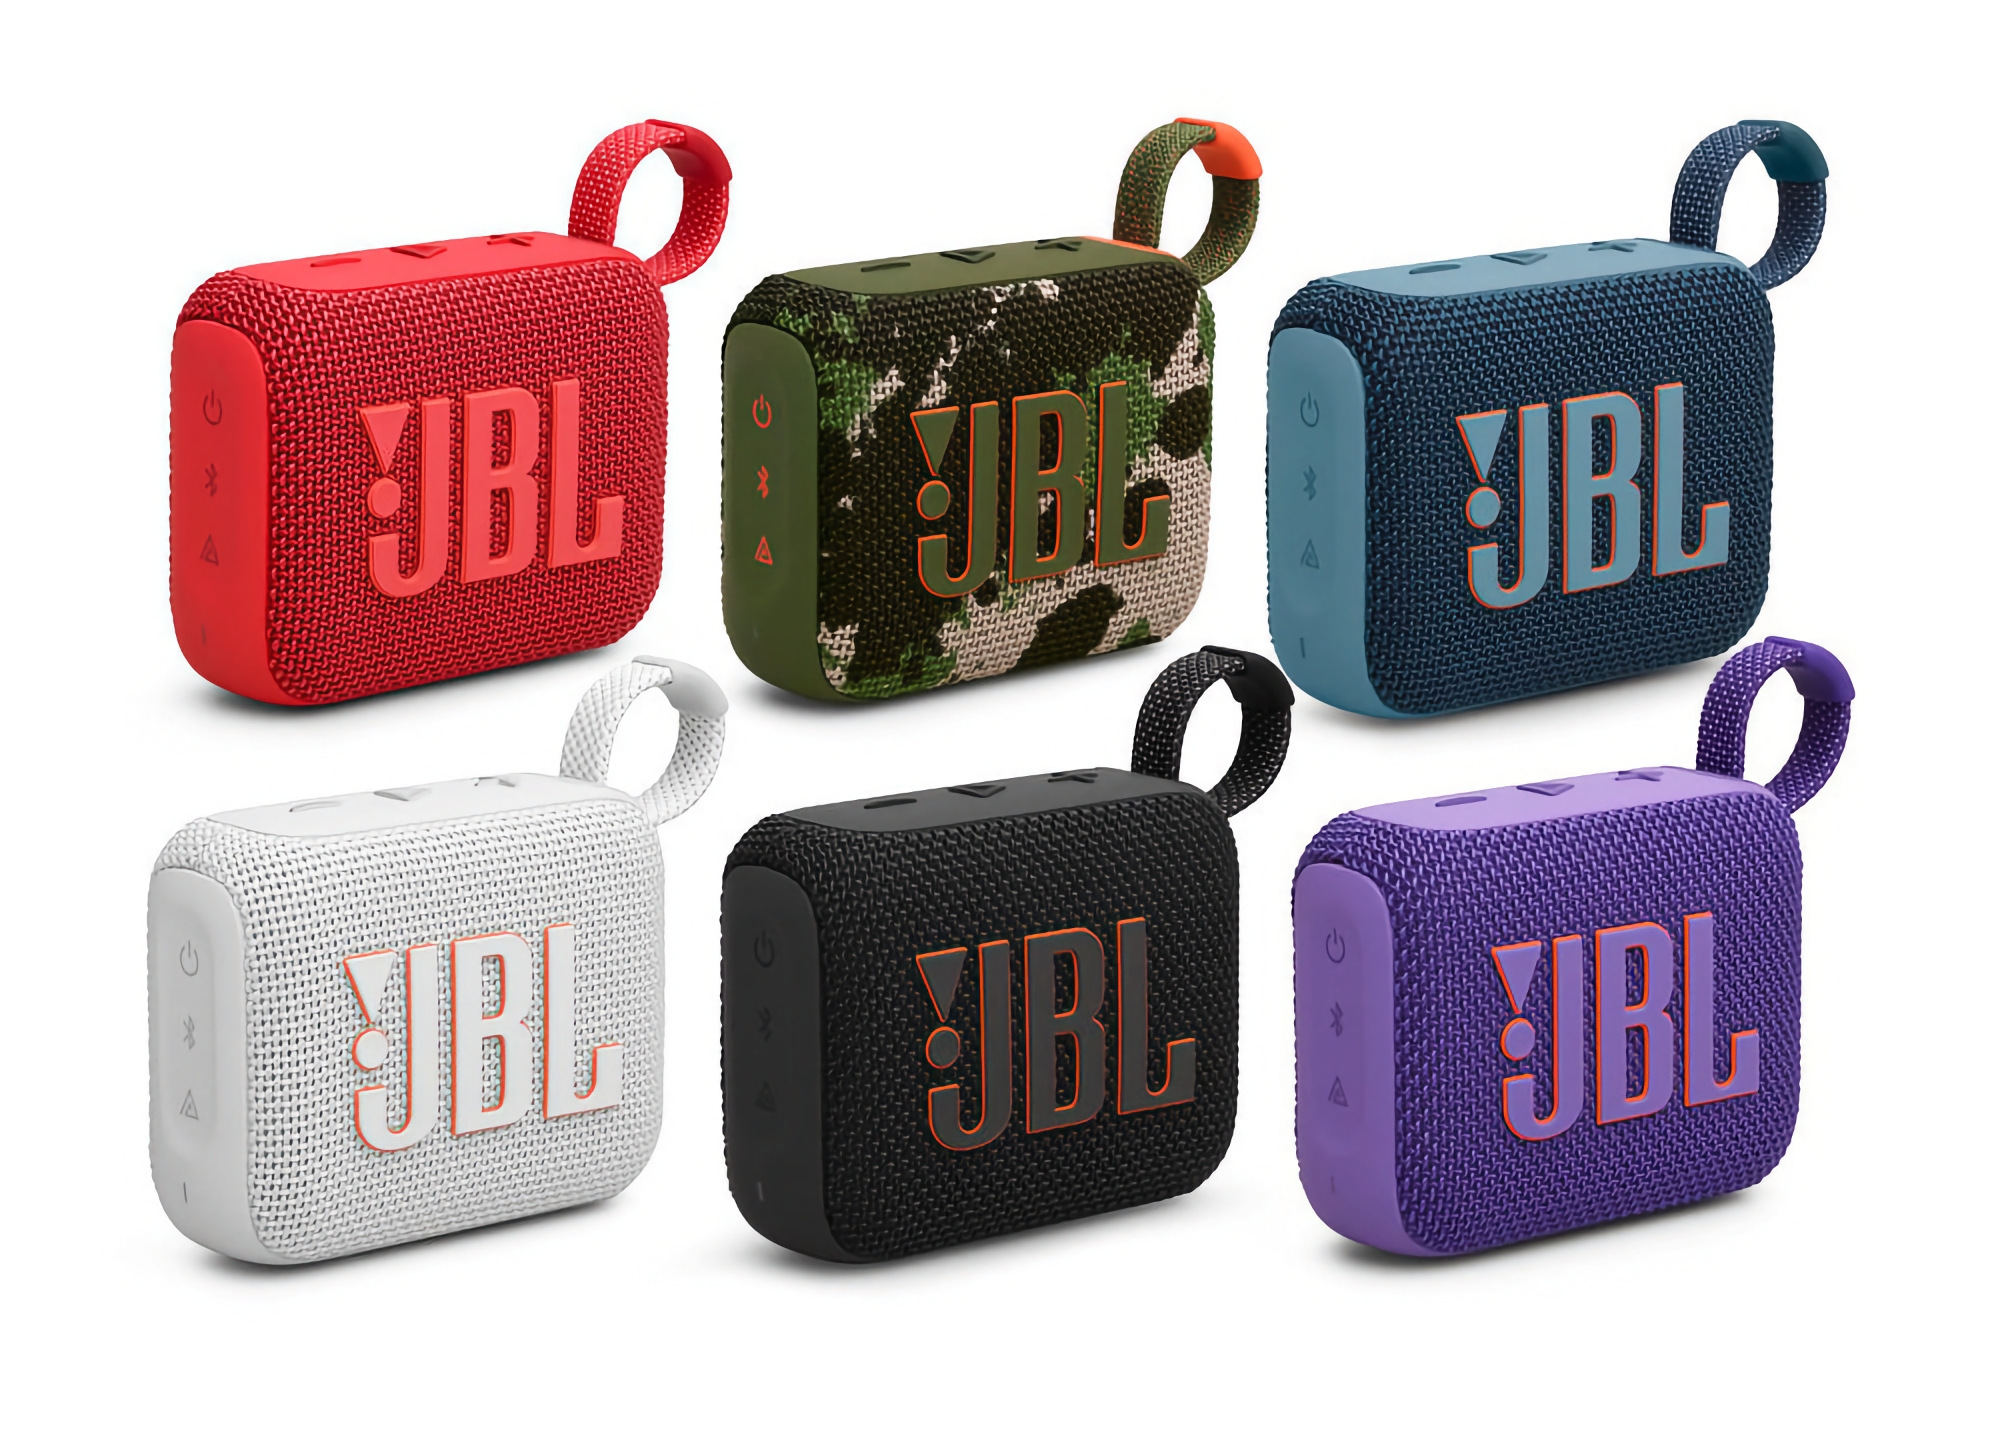 JBL Go 4: kompakt trådlös högtalare med IP67-skydd, Bluetooth 5.3, USB-C-port och AURACAST-teknik för 60 USD